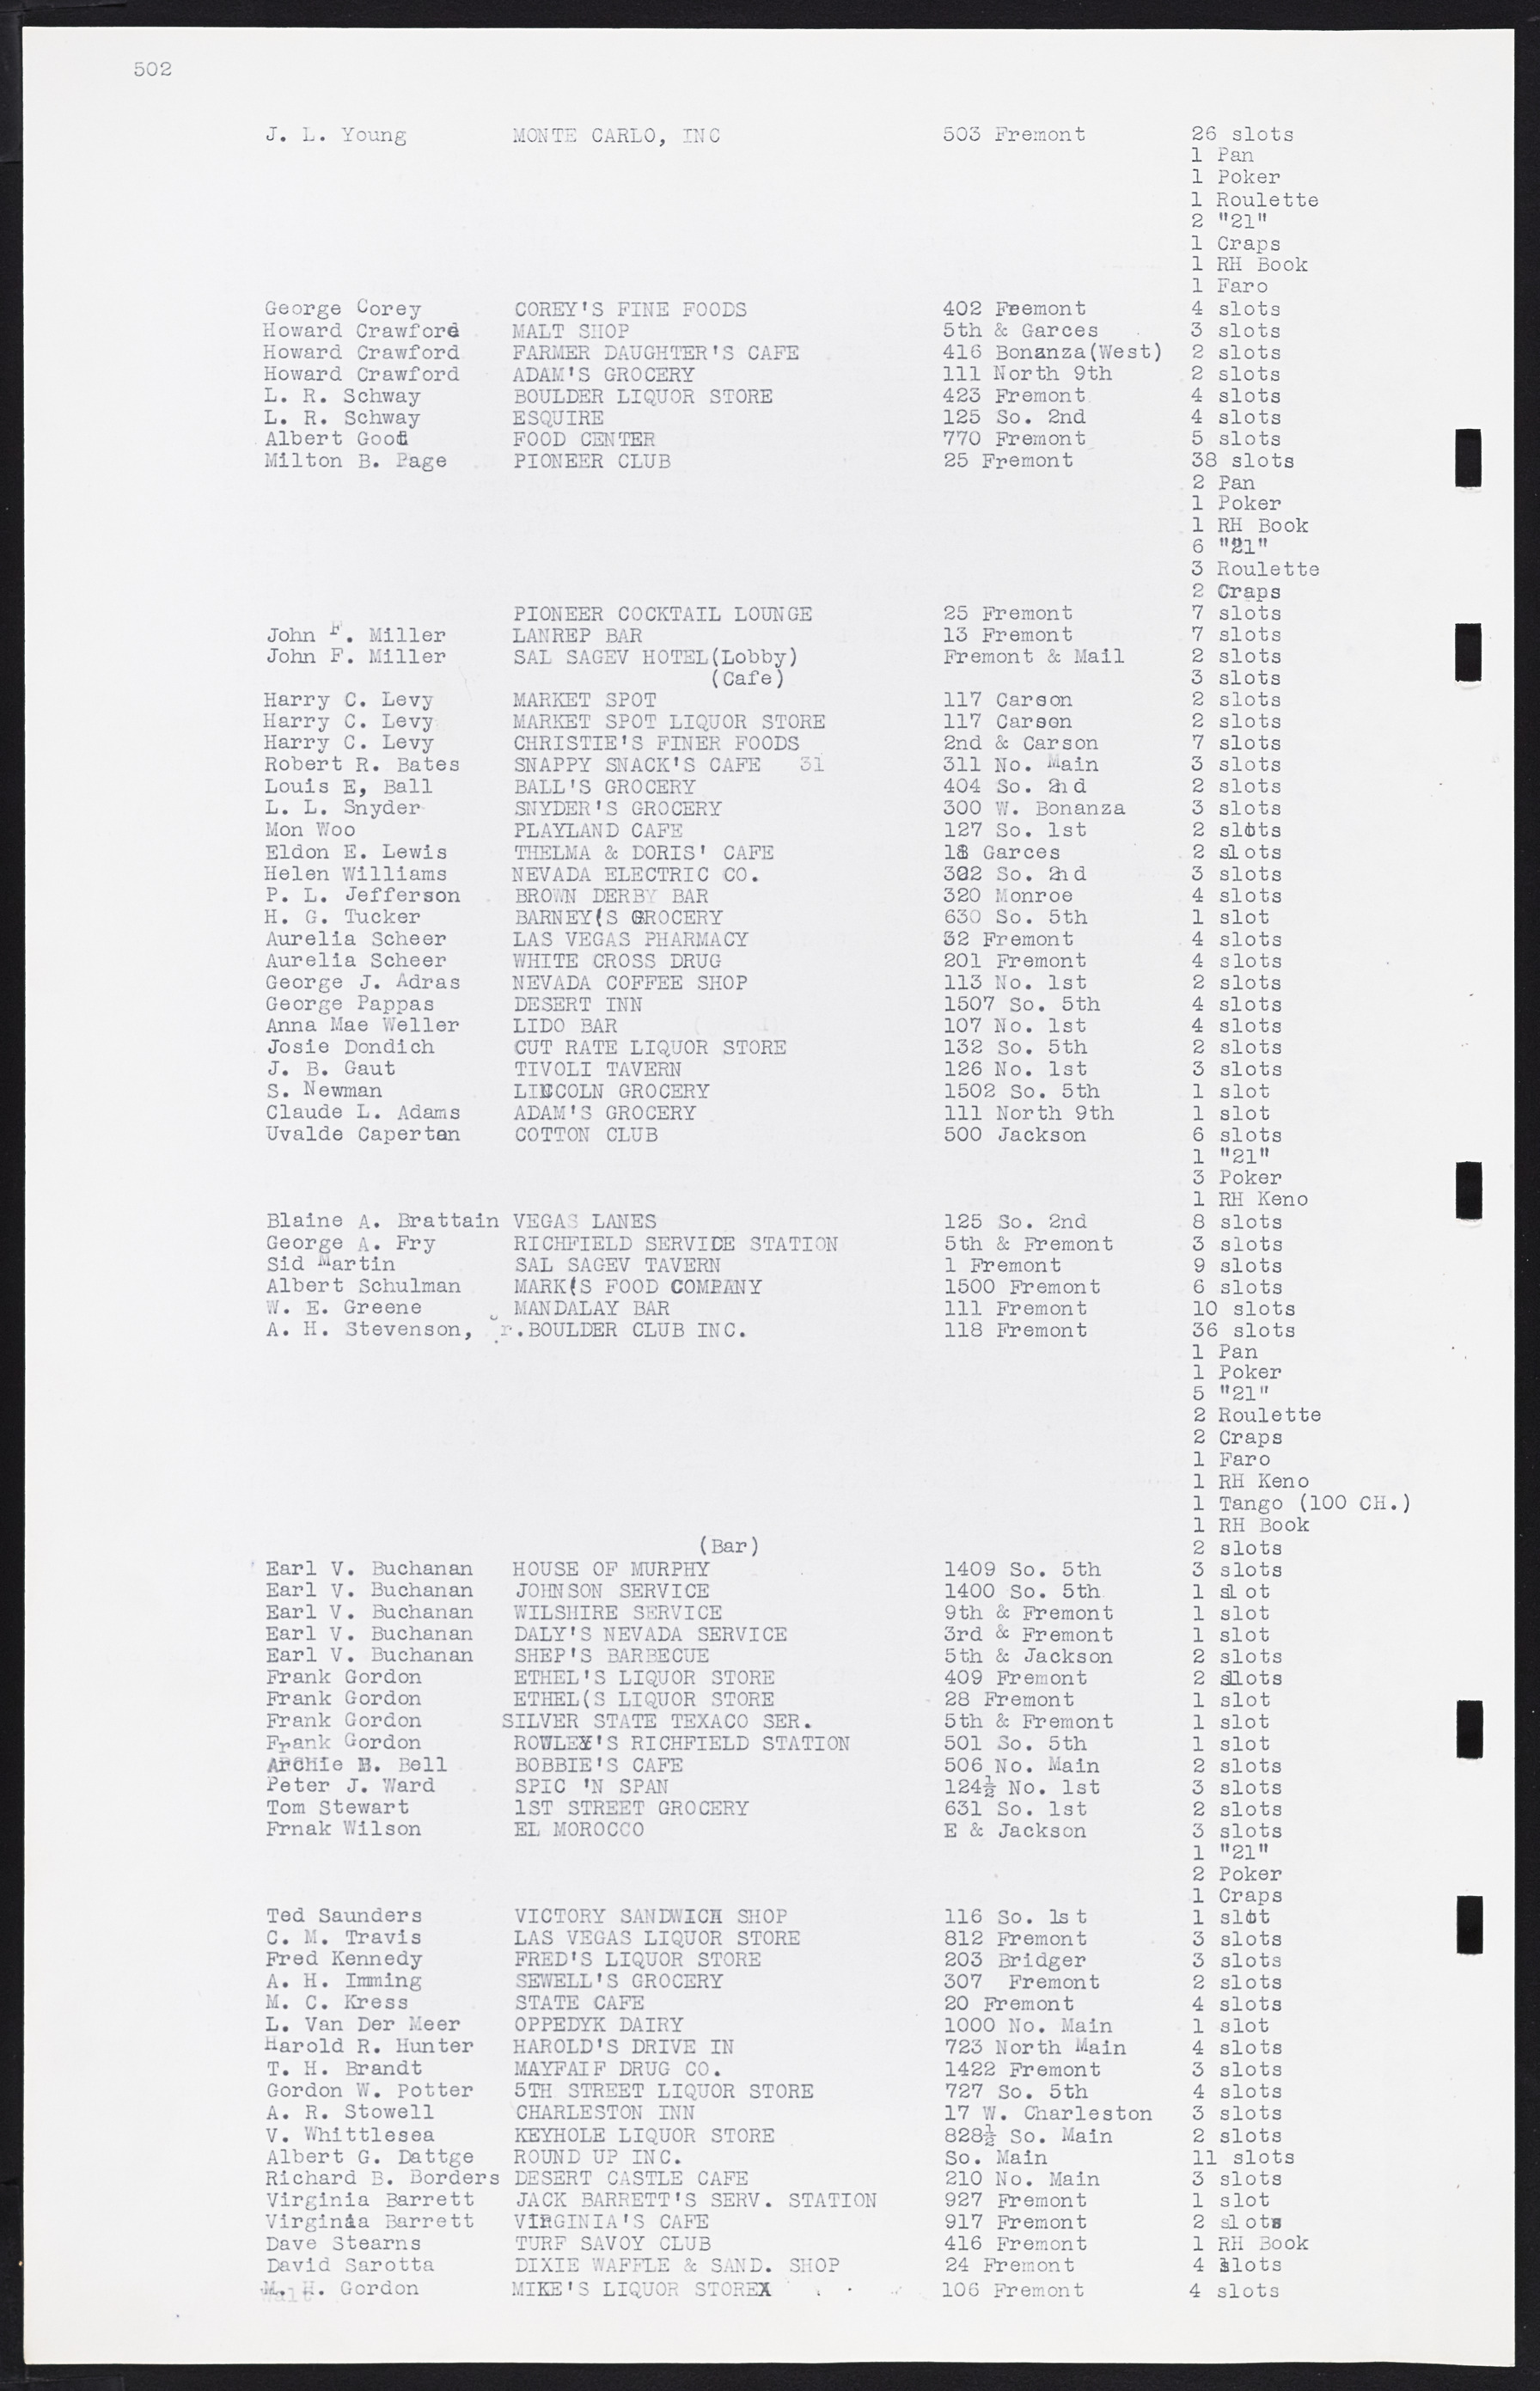 Las Vegas City Commission Minutes, August 11, 1942 to December 30, 1946, lvc000005-533